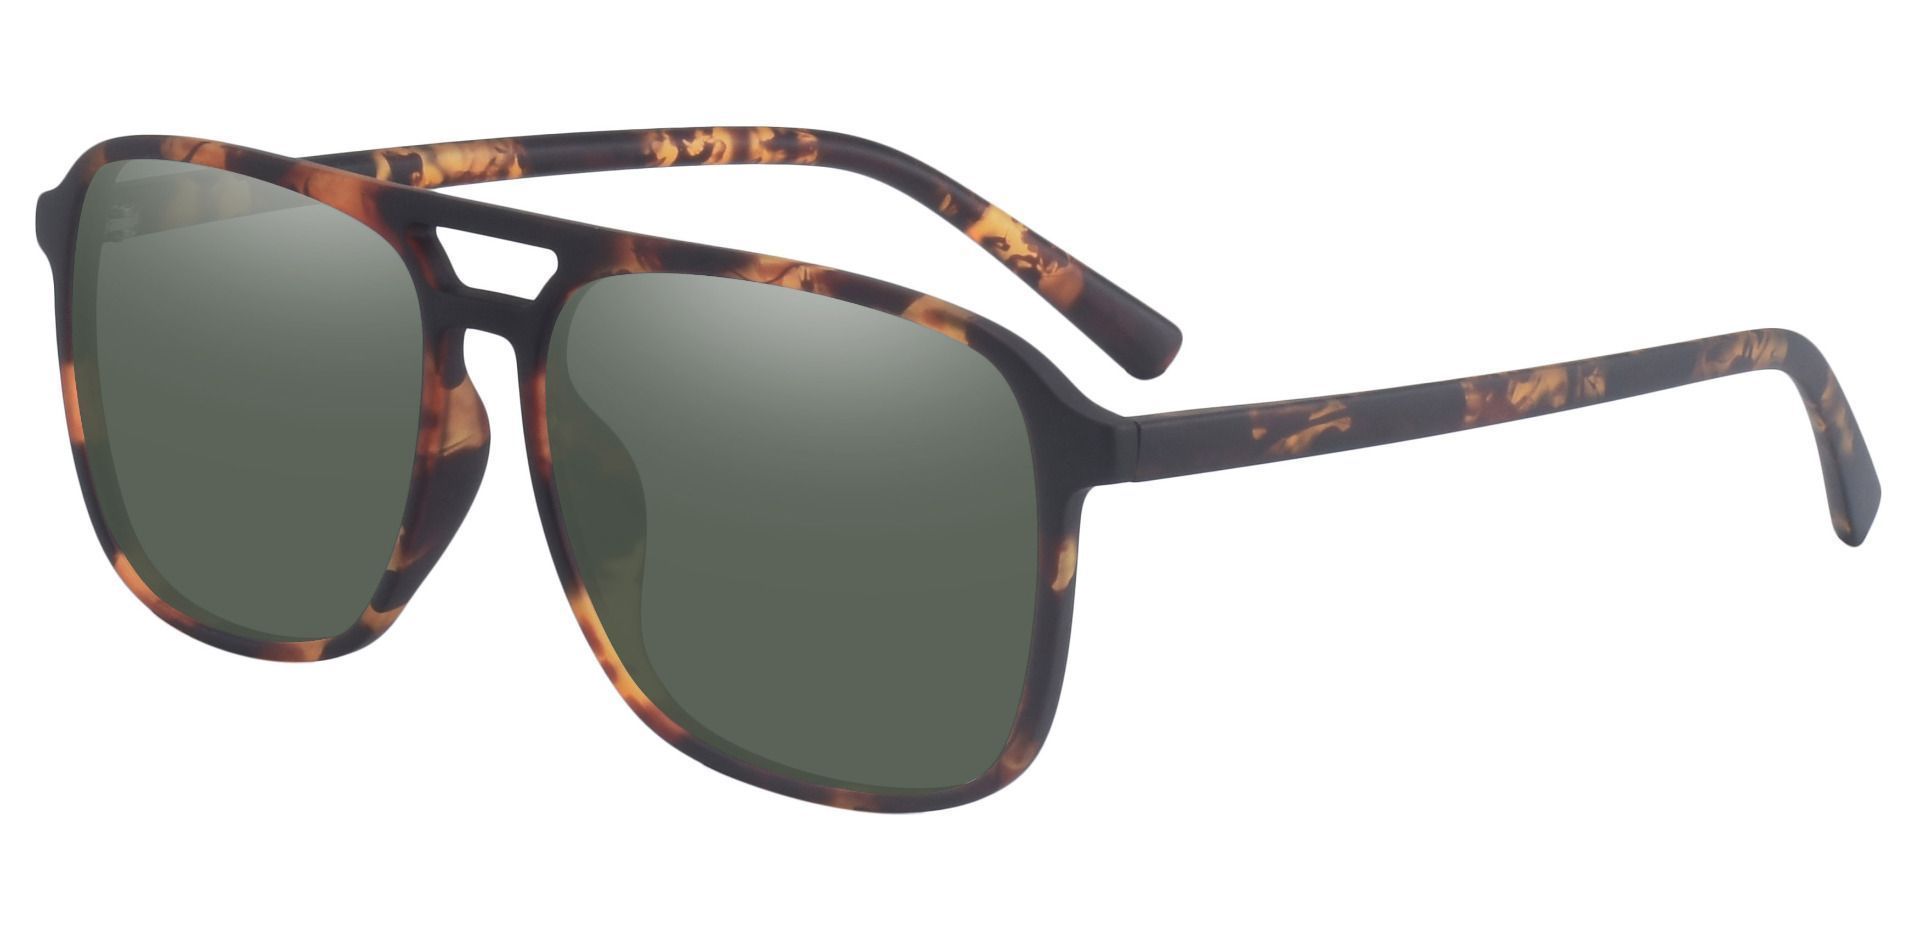 Edward Aviator Prescription Sunglasses - Tortoise Frame With Green Lenses